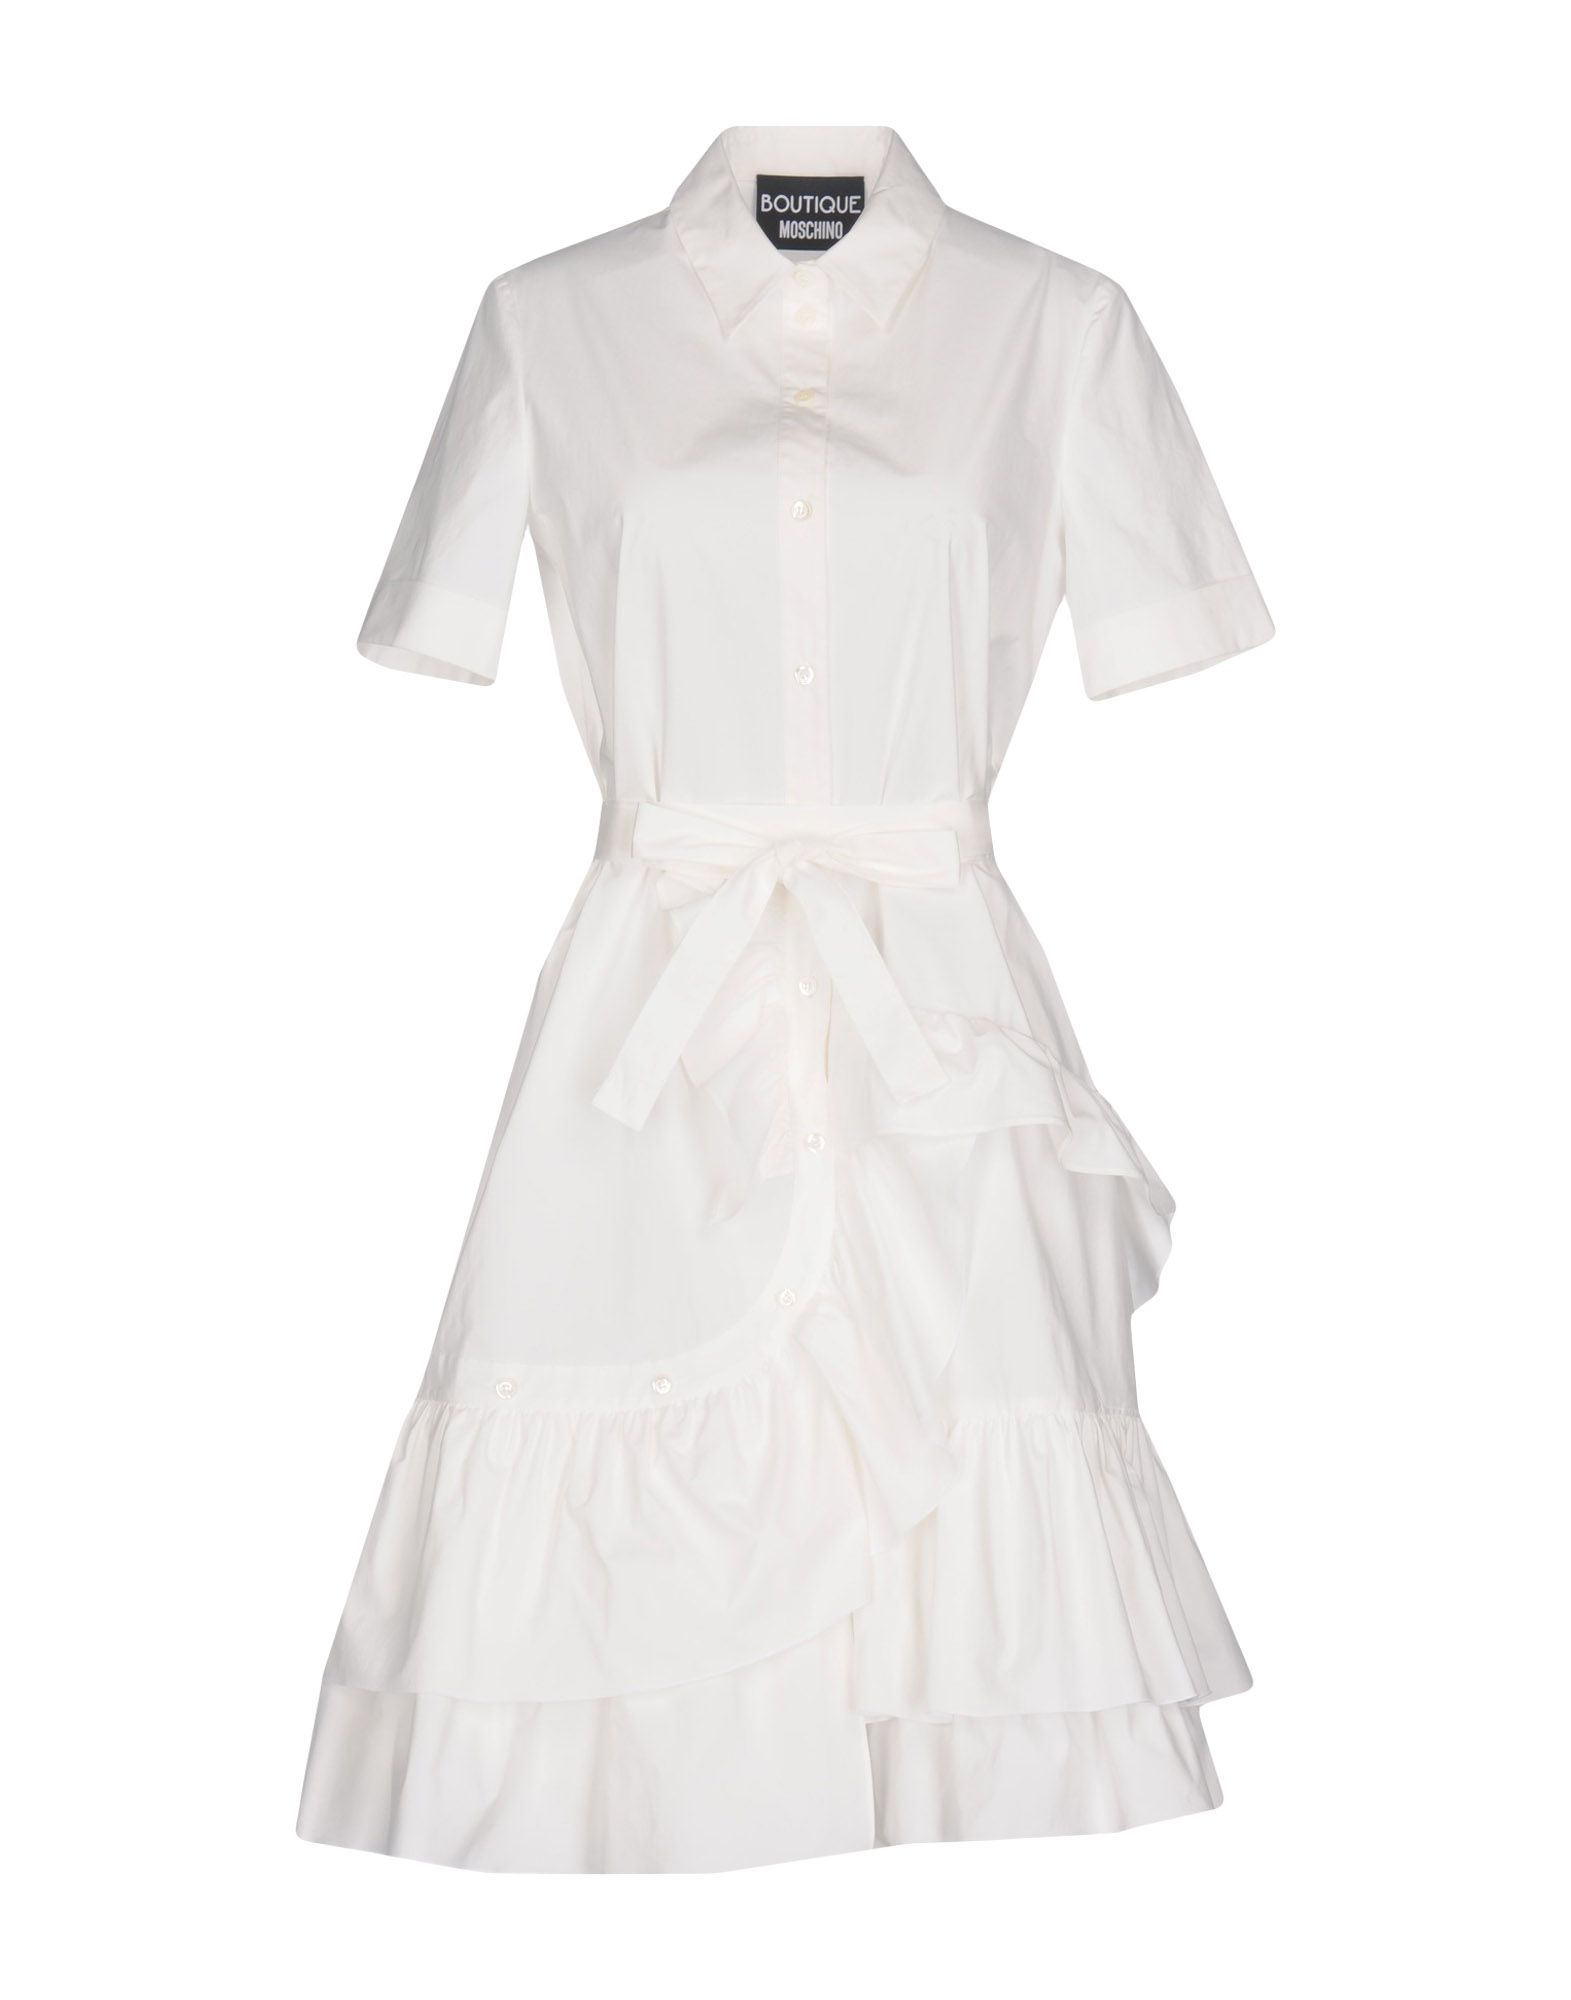 Boutique Moschino платье. Платье женское белое. Римское белое платье до колен. Платья на торжество для женщин белые.